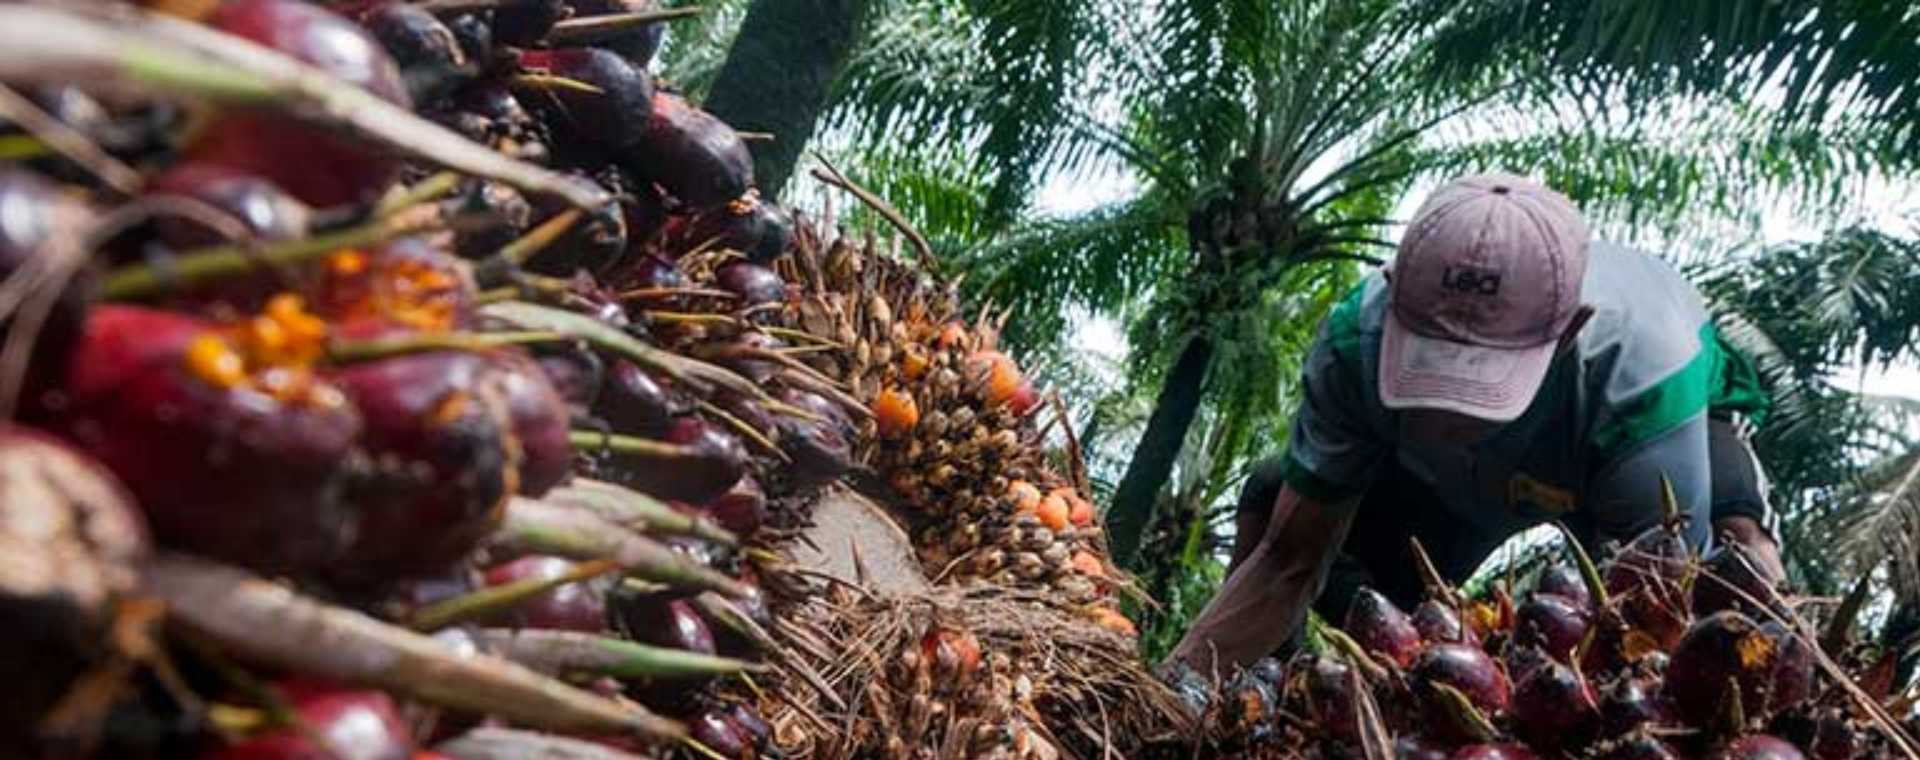 Pekerja memanen kelapa sawit di Desa Rangkasbitung Timur, Lebak, Banten, Selasa (22/9 - 2020). ANTARA FOTO / Muhammad Bagus Khoirunas